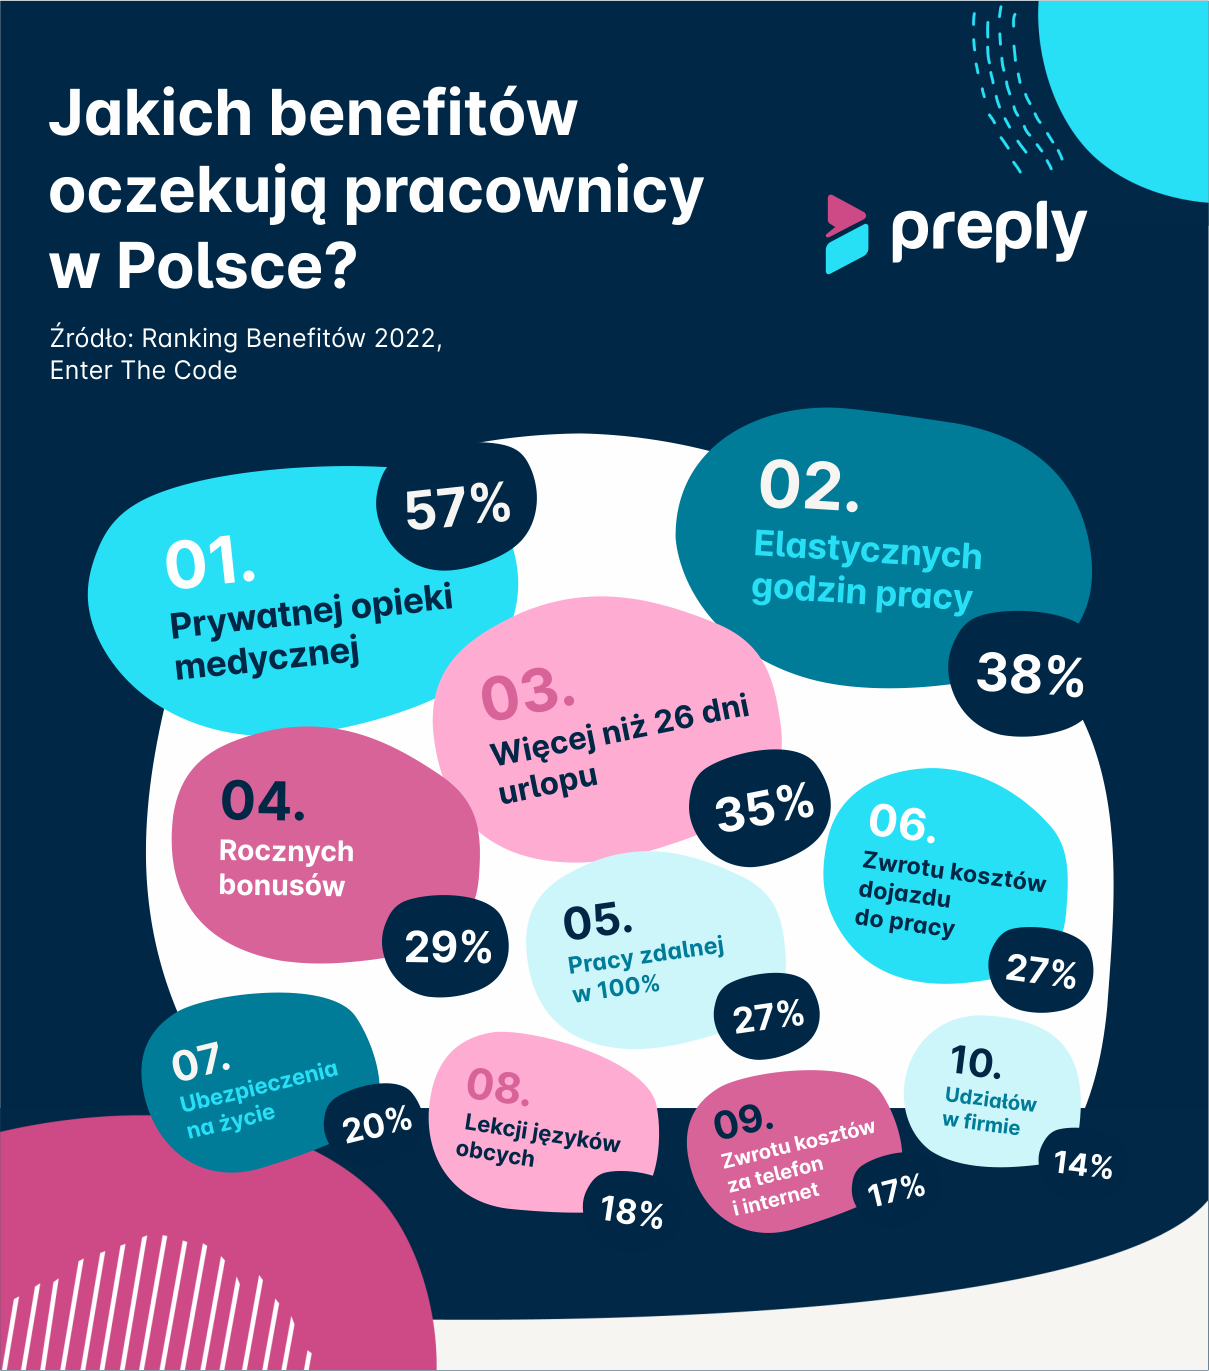 Benefity pracownicze w Polsce i Europie. Preply.com sprawdziło, czego oczekują zatrudnieni oprócz dobrej pensji